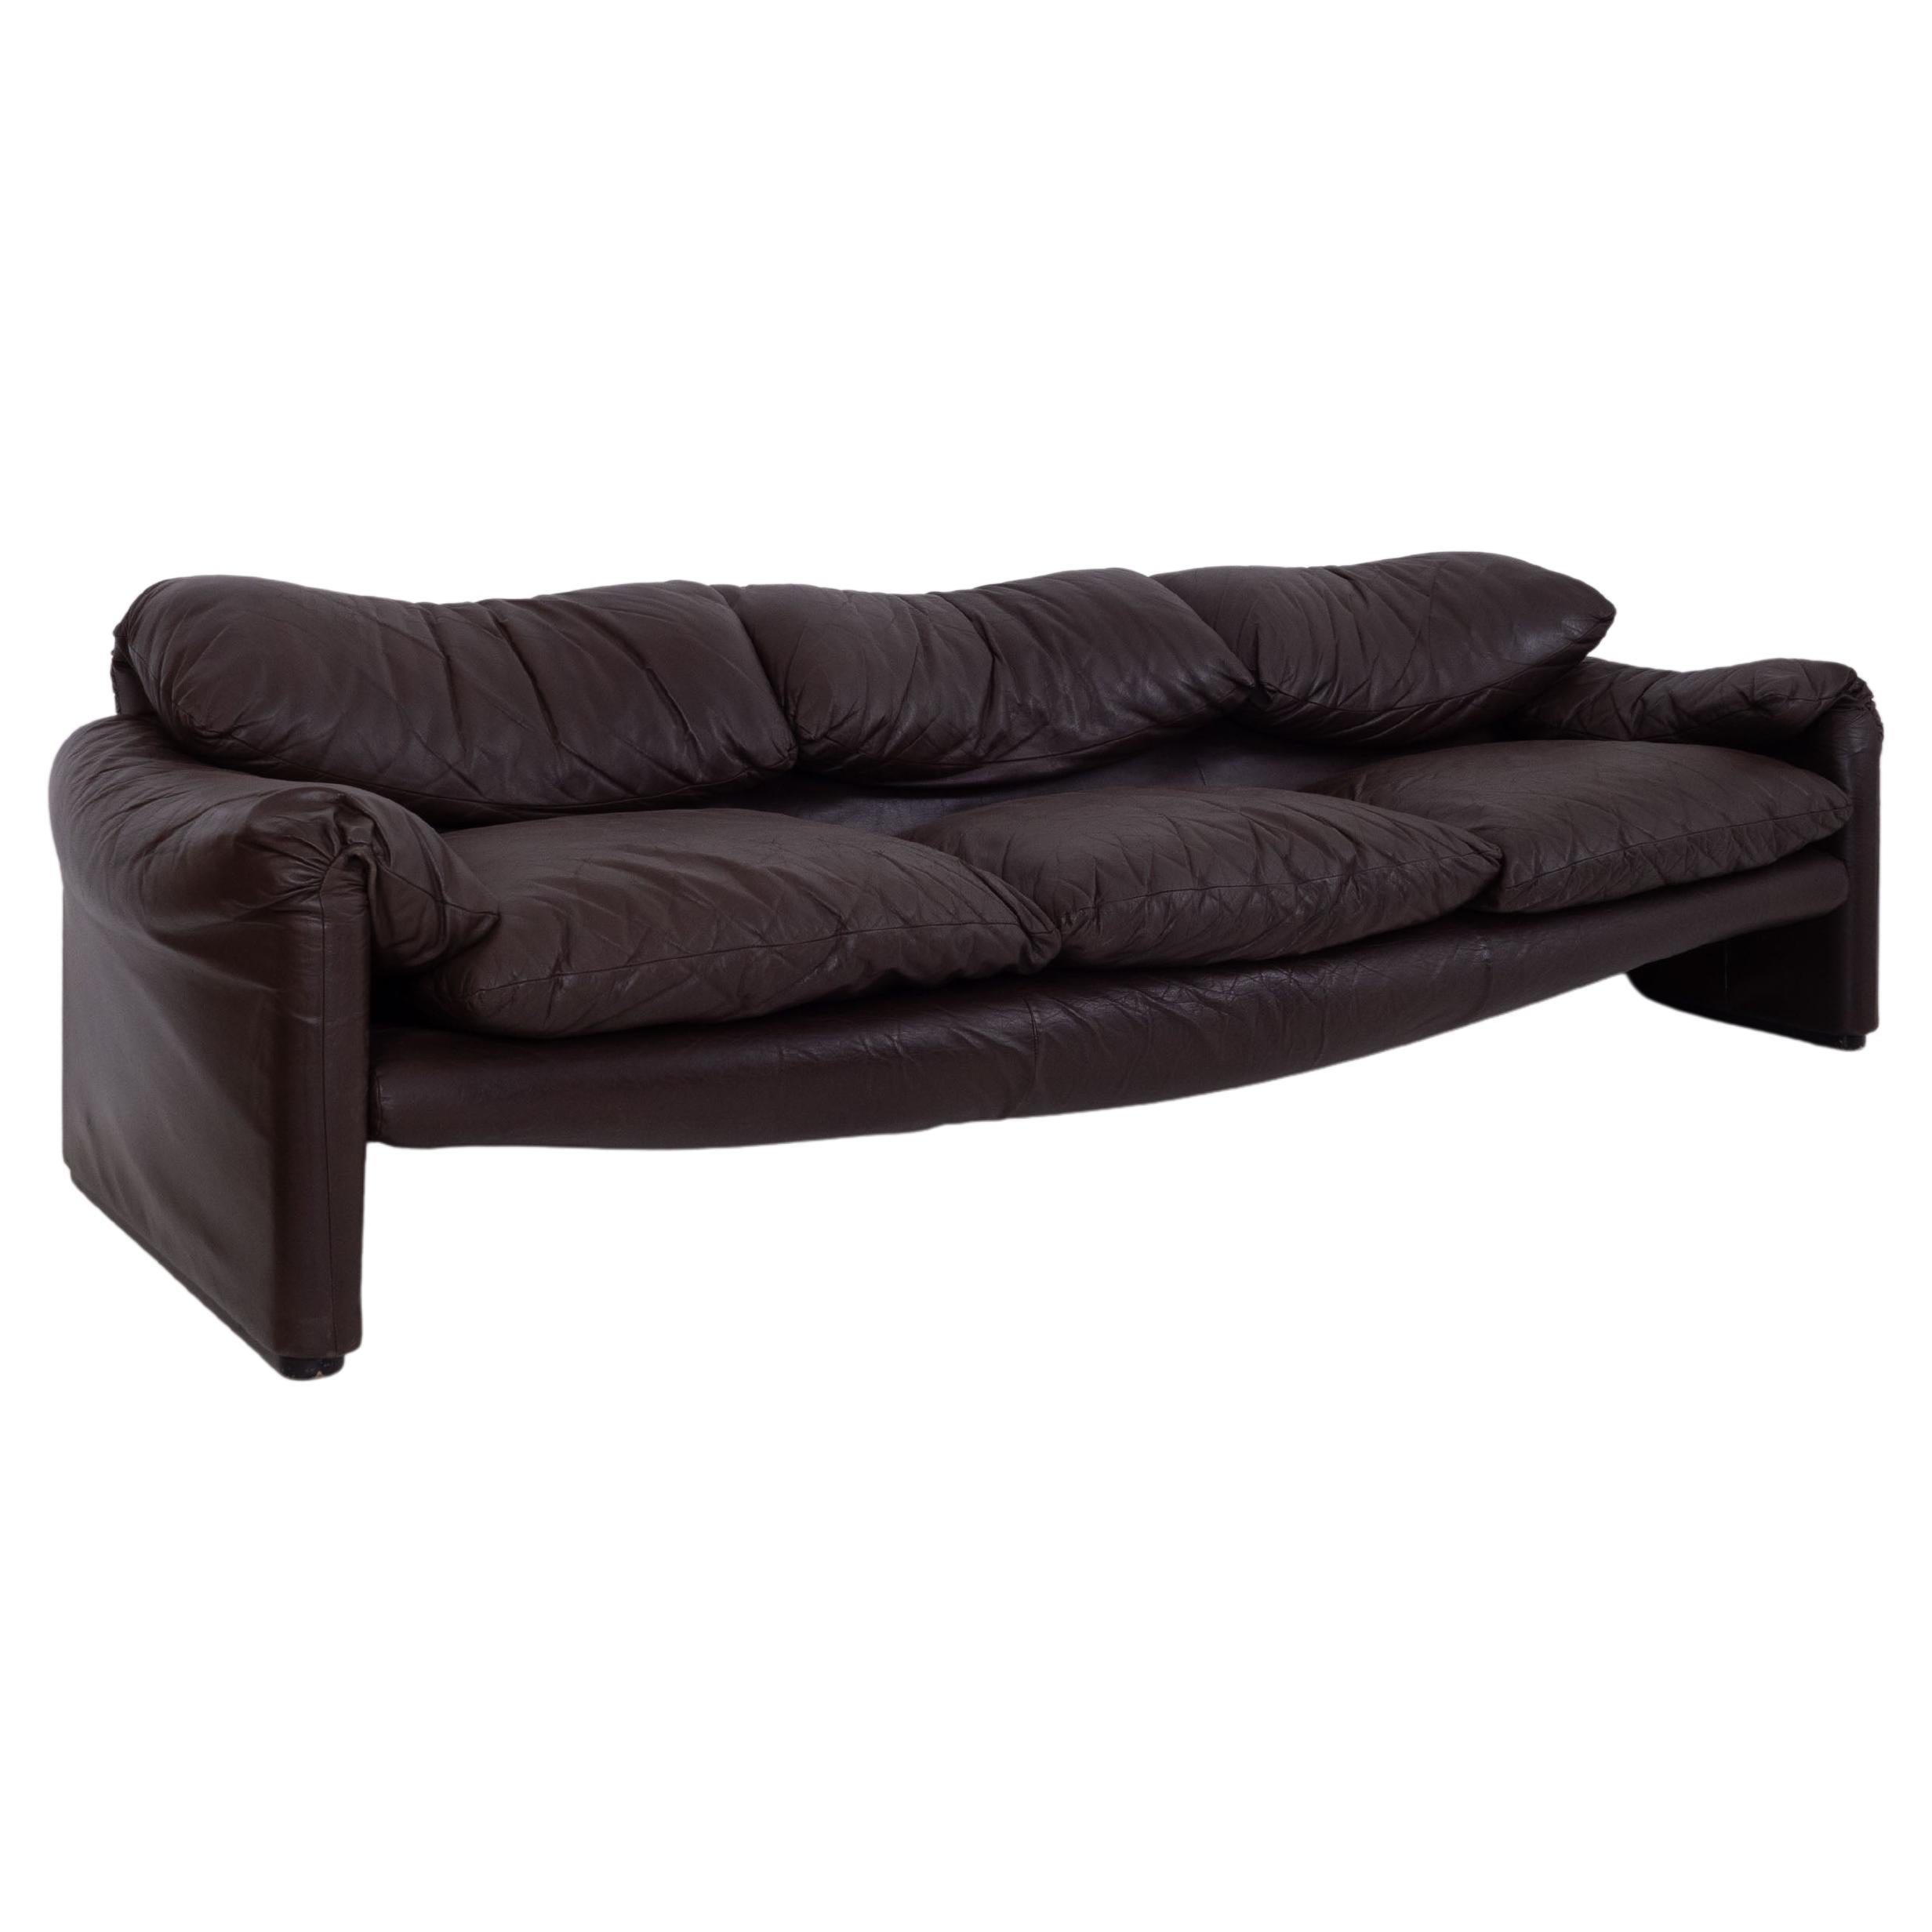 Maralunga Sofa by Vico Magistretti for Cassina, Dark Brown Leather